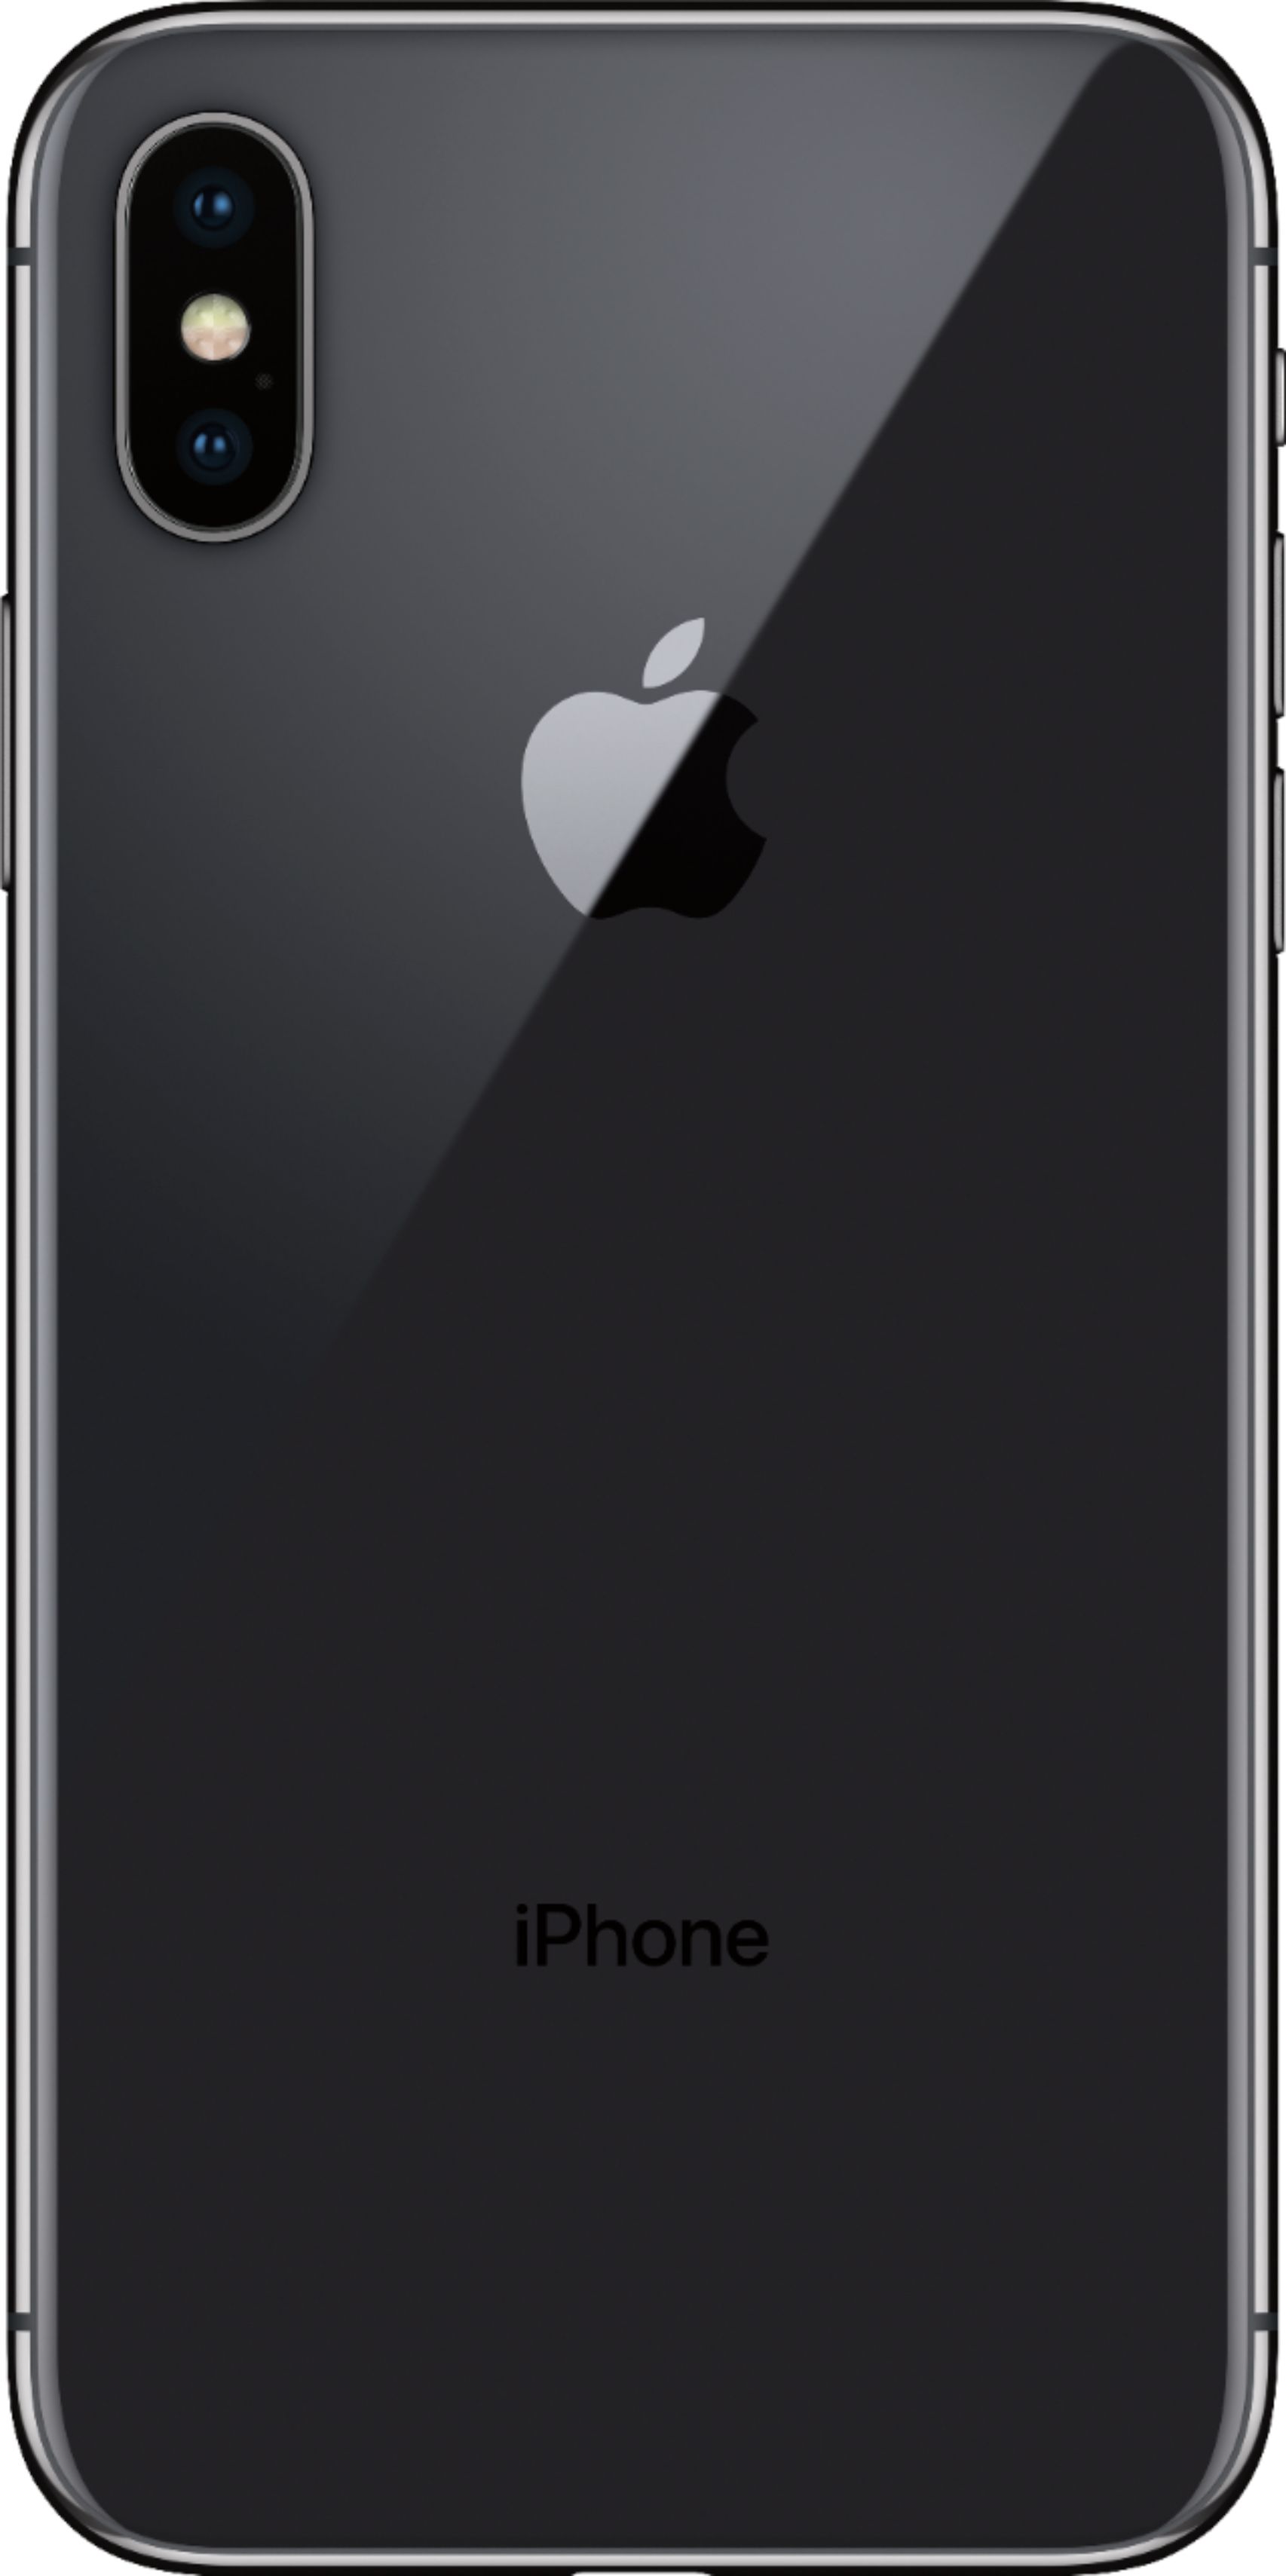 iPhone X Space Gray 64 GB docomo スマートフォン本体 スマートフォン/携帯電話 家電・スマホ・カメラ アウトレット専門店